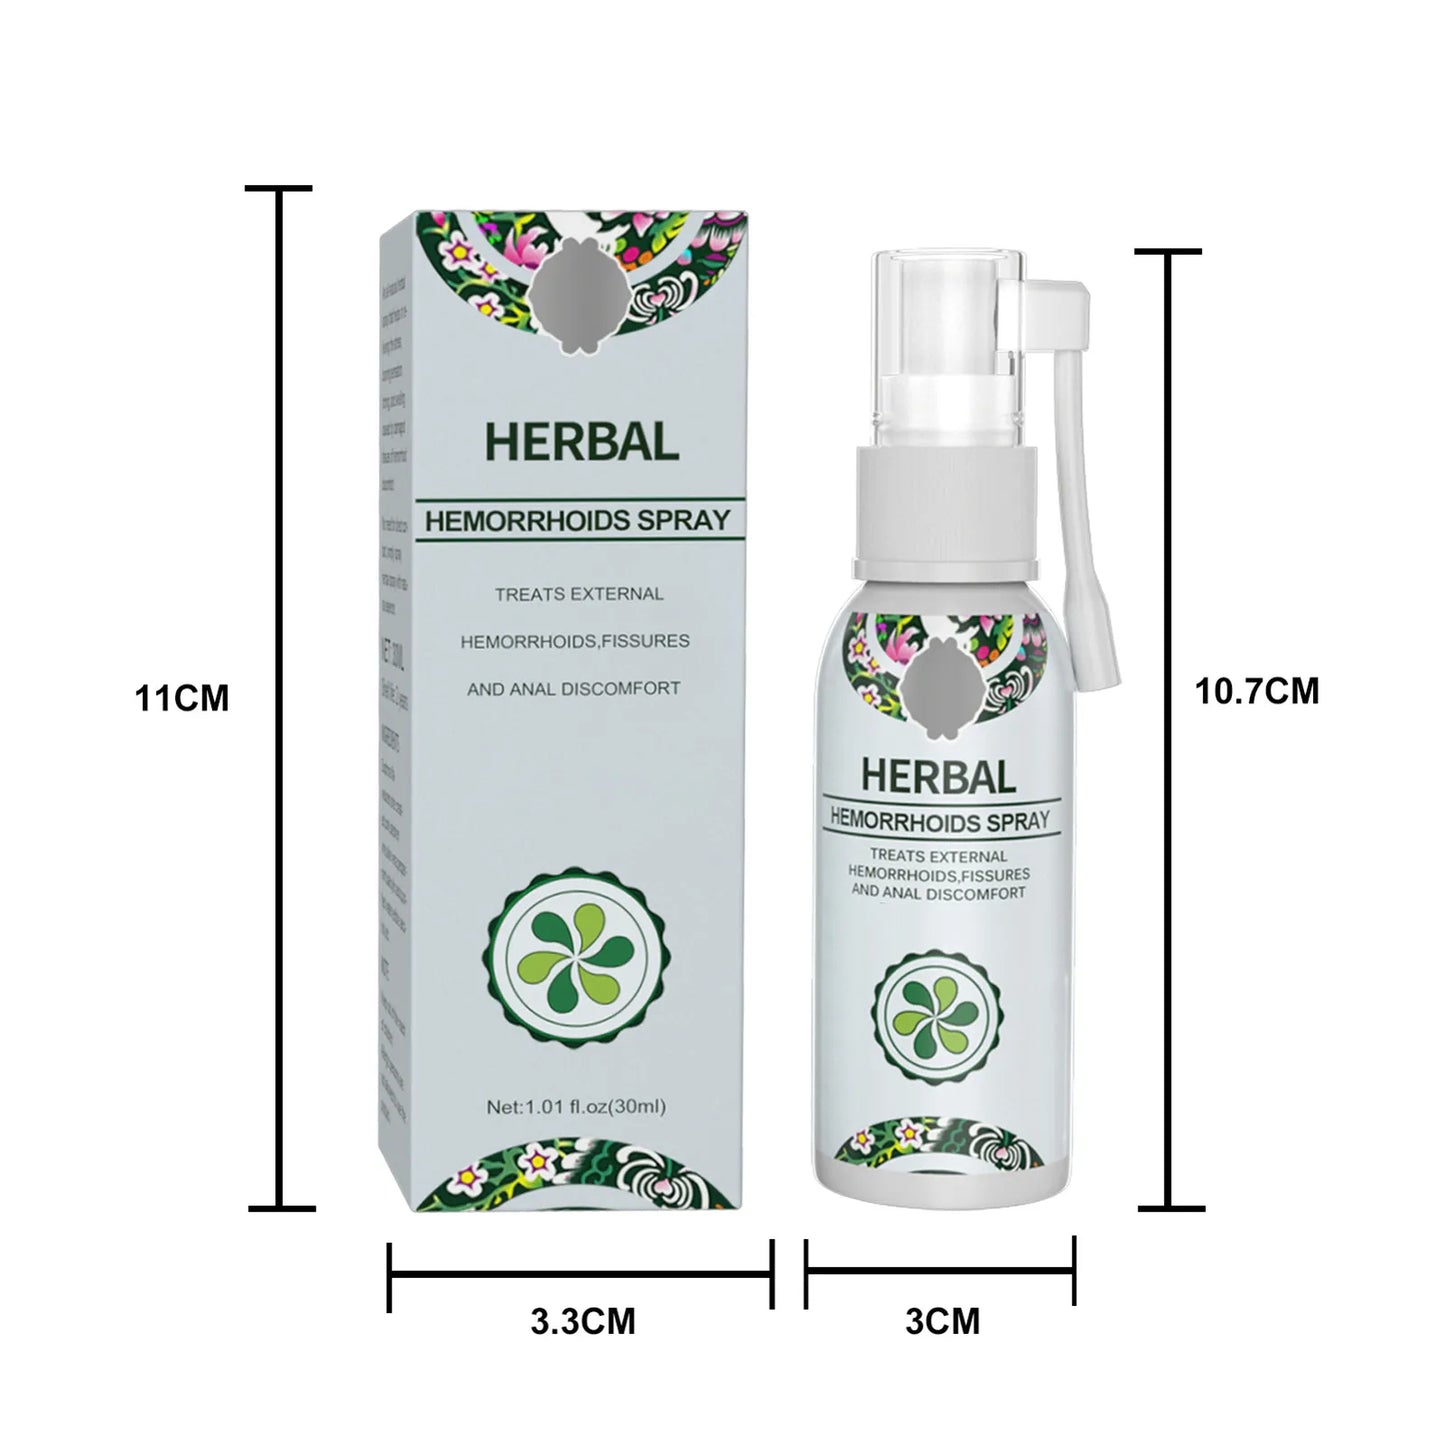 Herbal Hemorrhoids Spray (Buy 1 Get 1 Free)